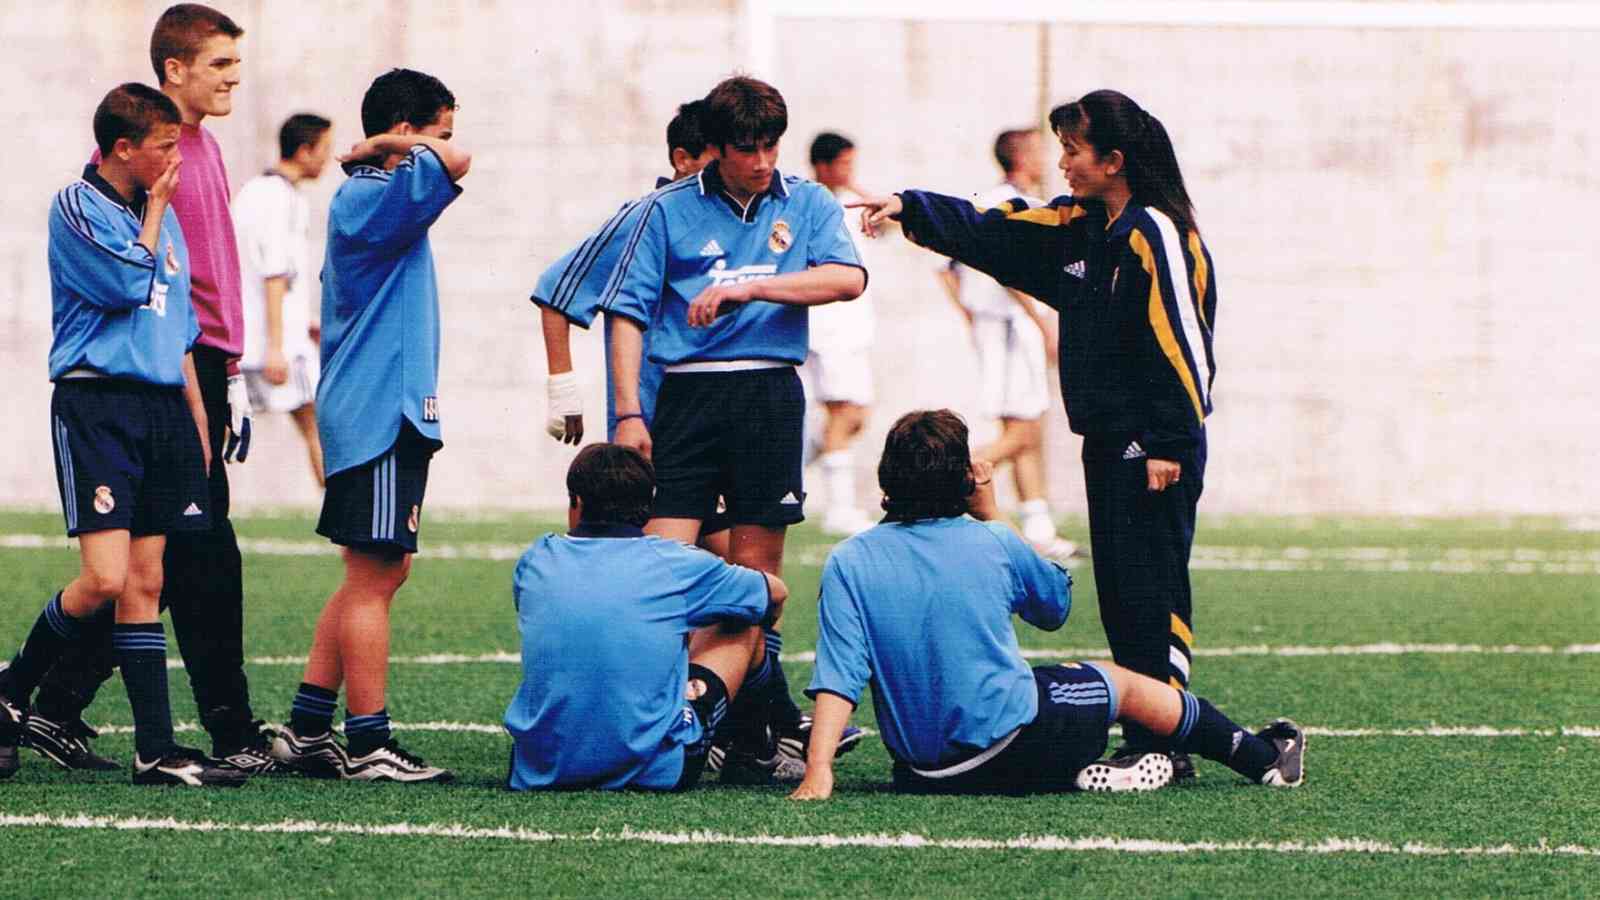 スペイン初 日本女性サッカー監督 怒涛の人生 リーダーシップ 教養 資格 スキル 東洋経済オンライン 社会をよくする経済ニュース